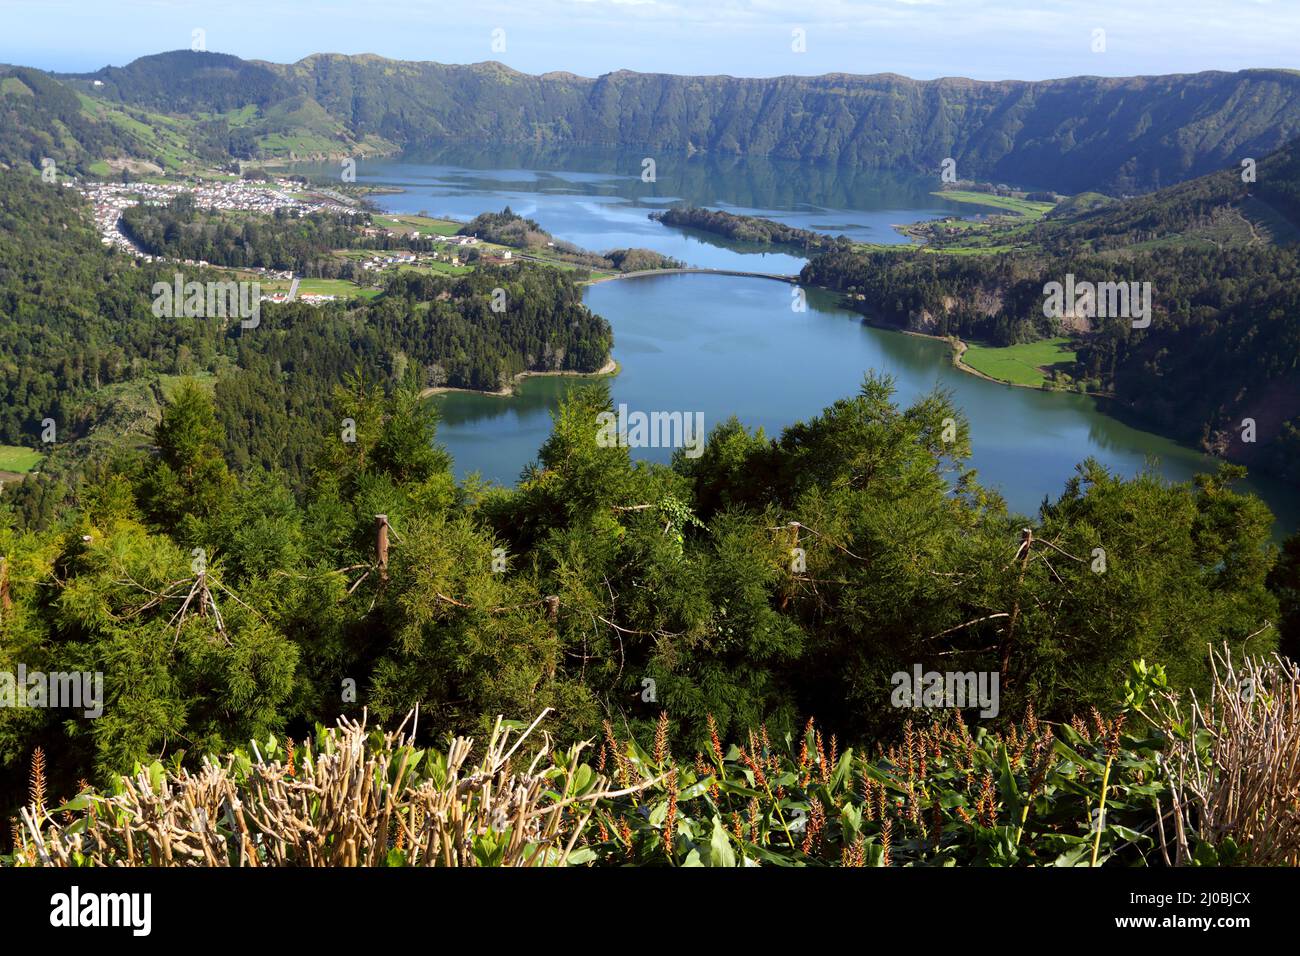 Cete Cidades with Lagoa Azul and Lagoa Verde, Sao Miguel, Azores Stock Photo